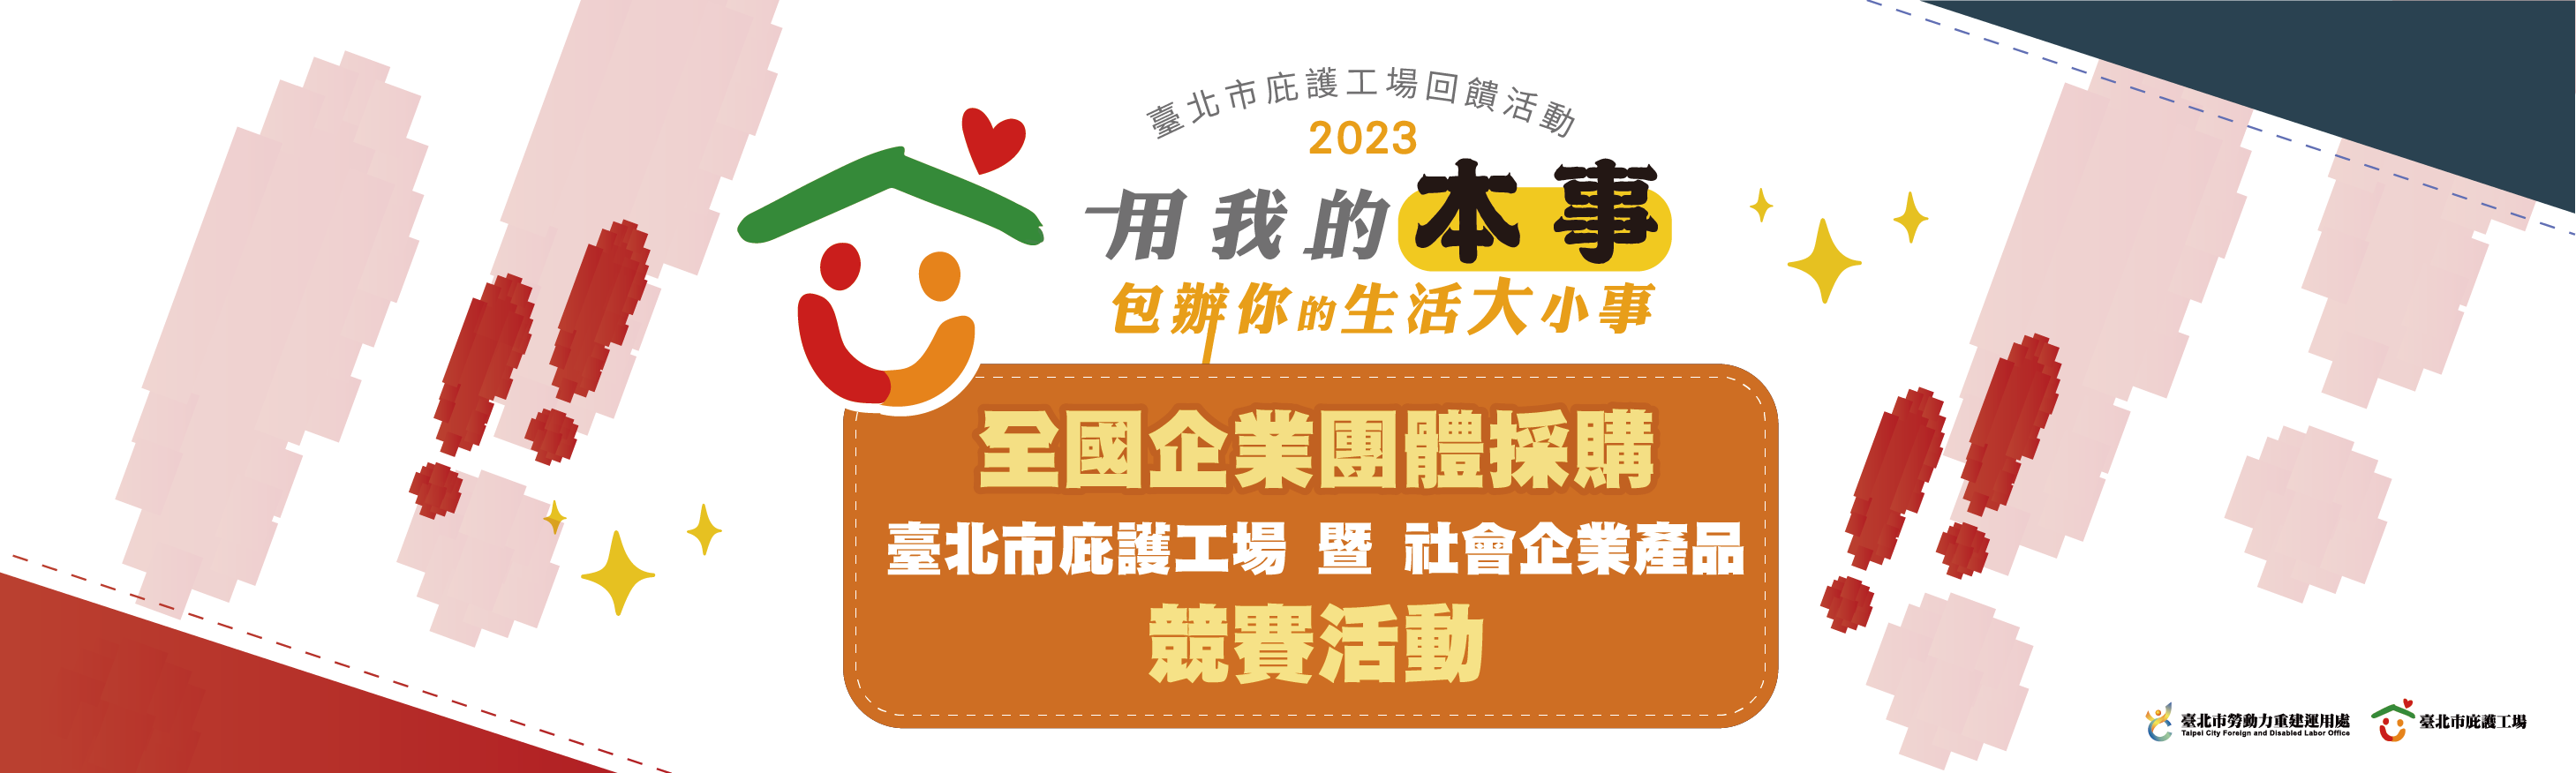 2023 全國企業團體採購臺北市庇護工場暨社會企業產品競賽活動 得獎名單